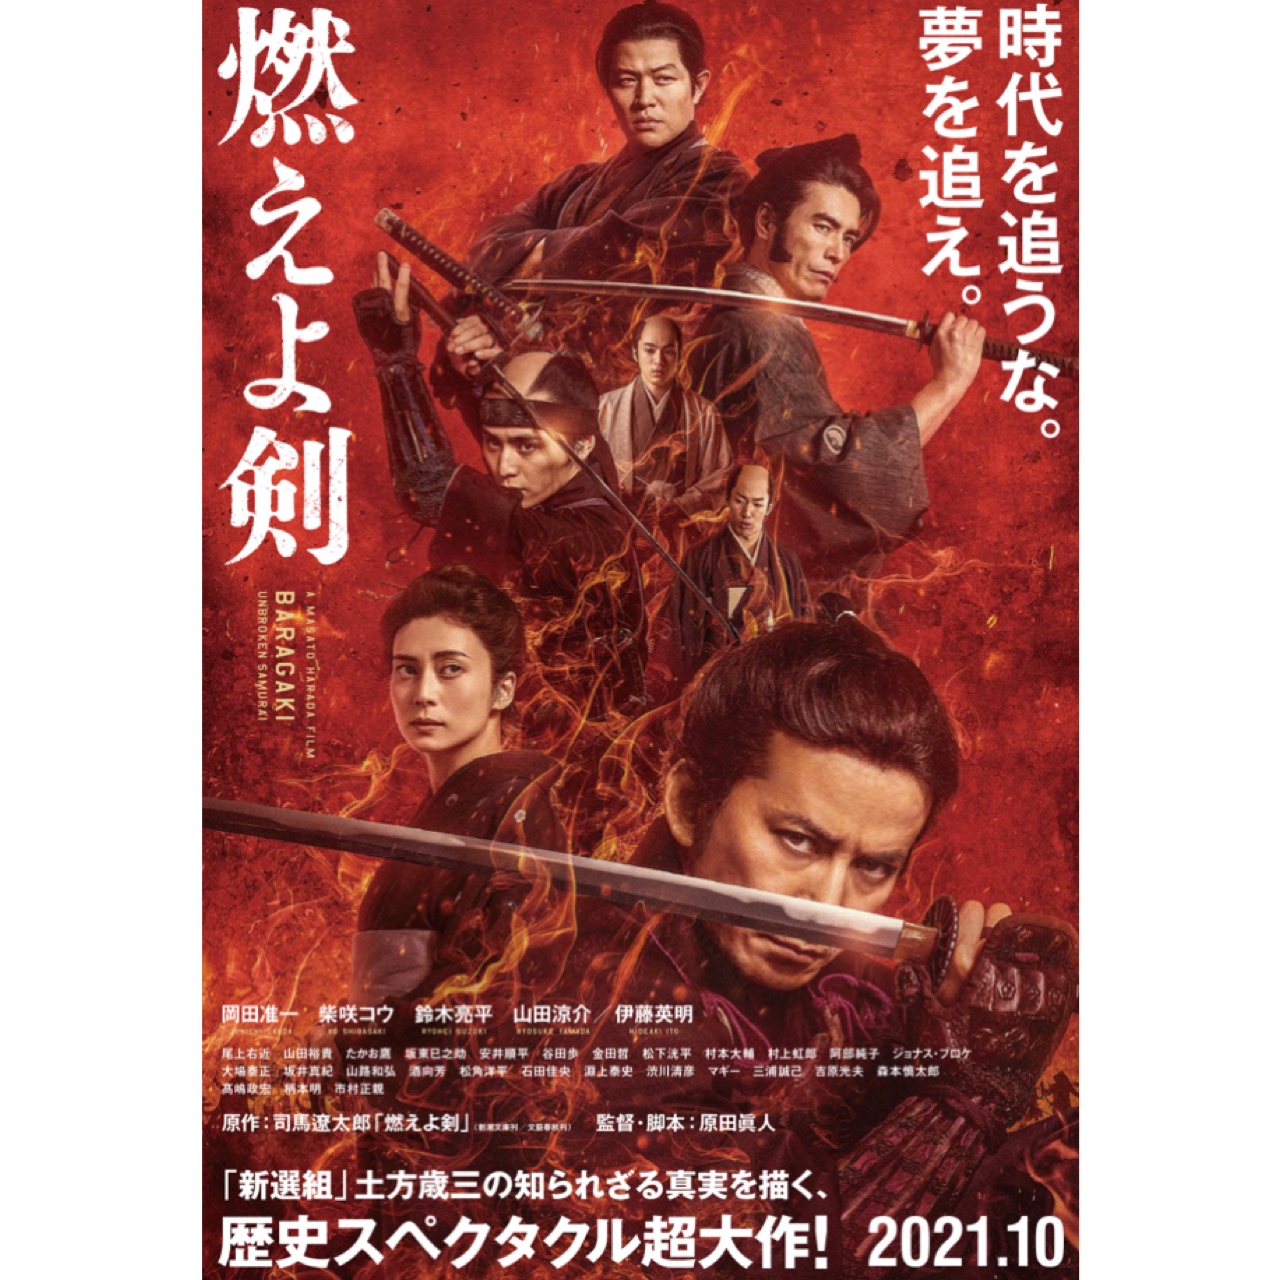 2021年10月 映画「燃えよ剣」公開決定